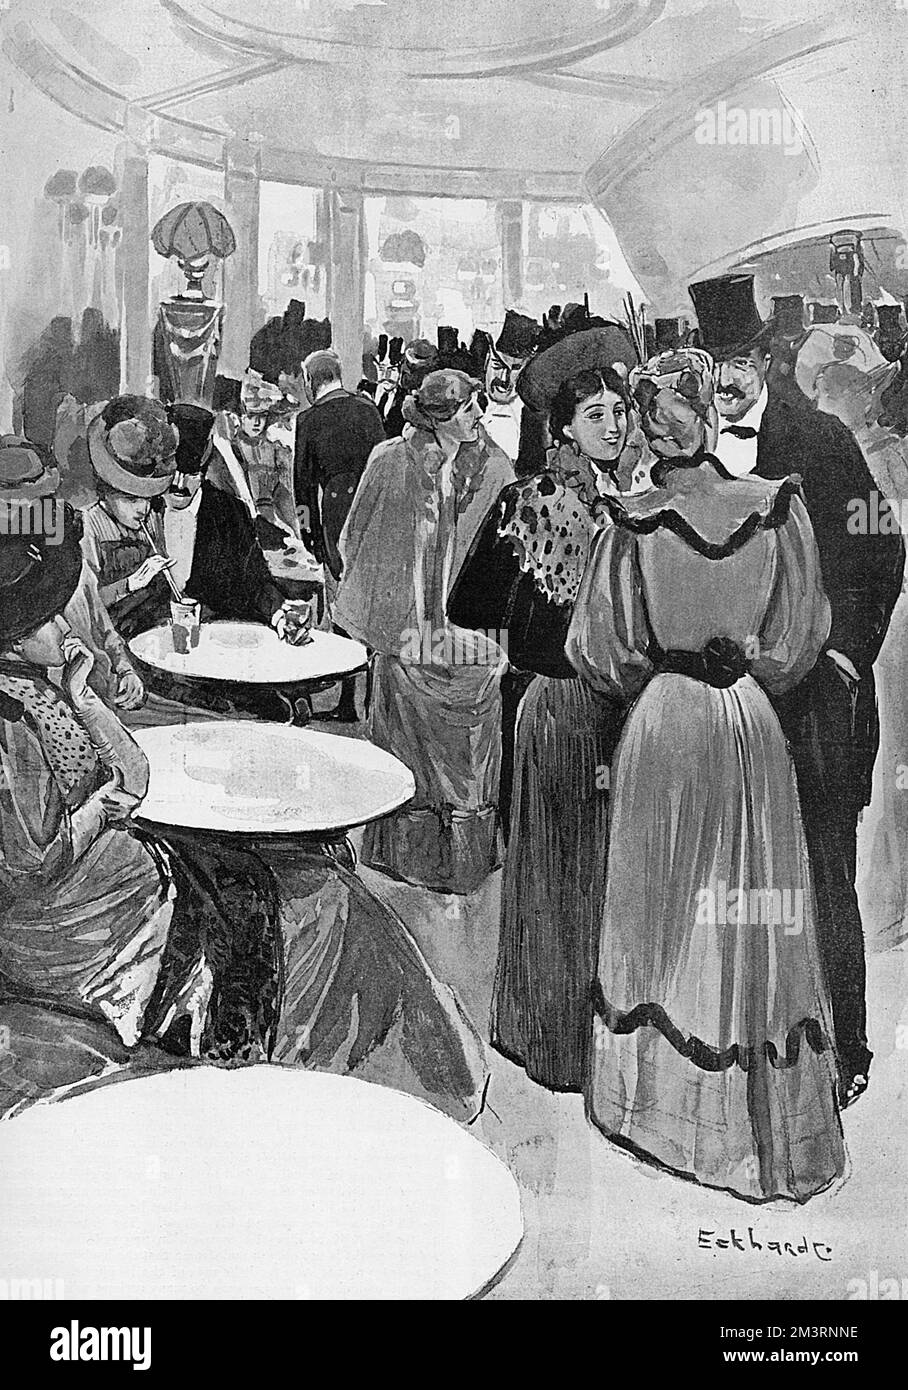 Promenade im Empire Theatre, Leicester Square, London - ein Ort, der bekannt ist, Frauen von leichter Tugend aufzuziehen, aber beliebt bei dem urbanen Gentleman. Die Sozialreformerin Laura Ormiston Chant kämpfte gegen die Promenade und behauptete, sie sei ein "Laster-Markt". Sie ließ sie im Oktober 1894 vom Londoner Bezirksrat erfolgreich abschaffen. Datum: 1894 Stockfoto